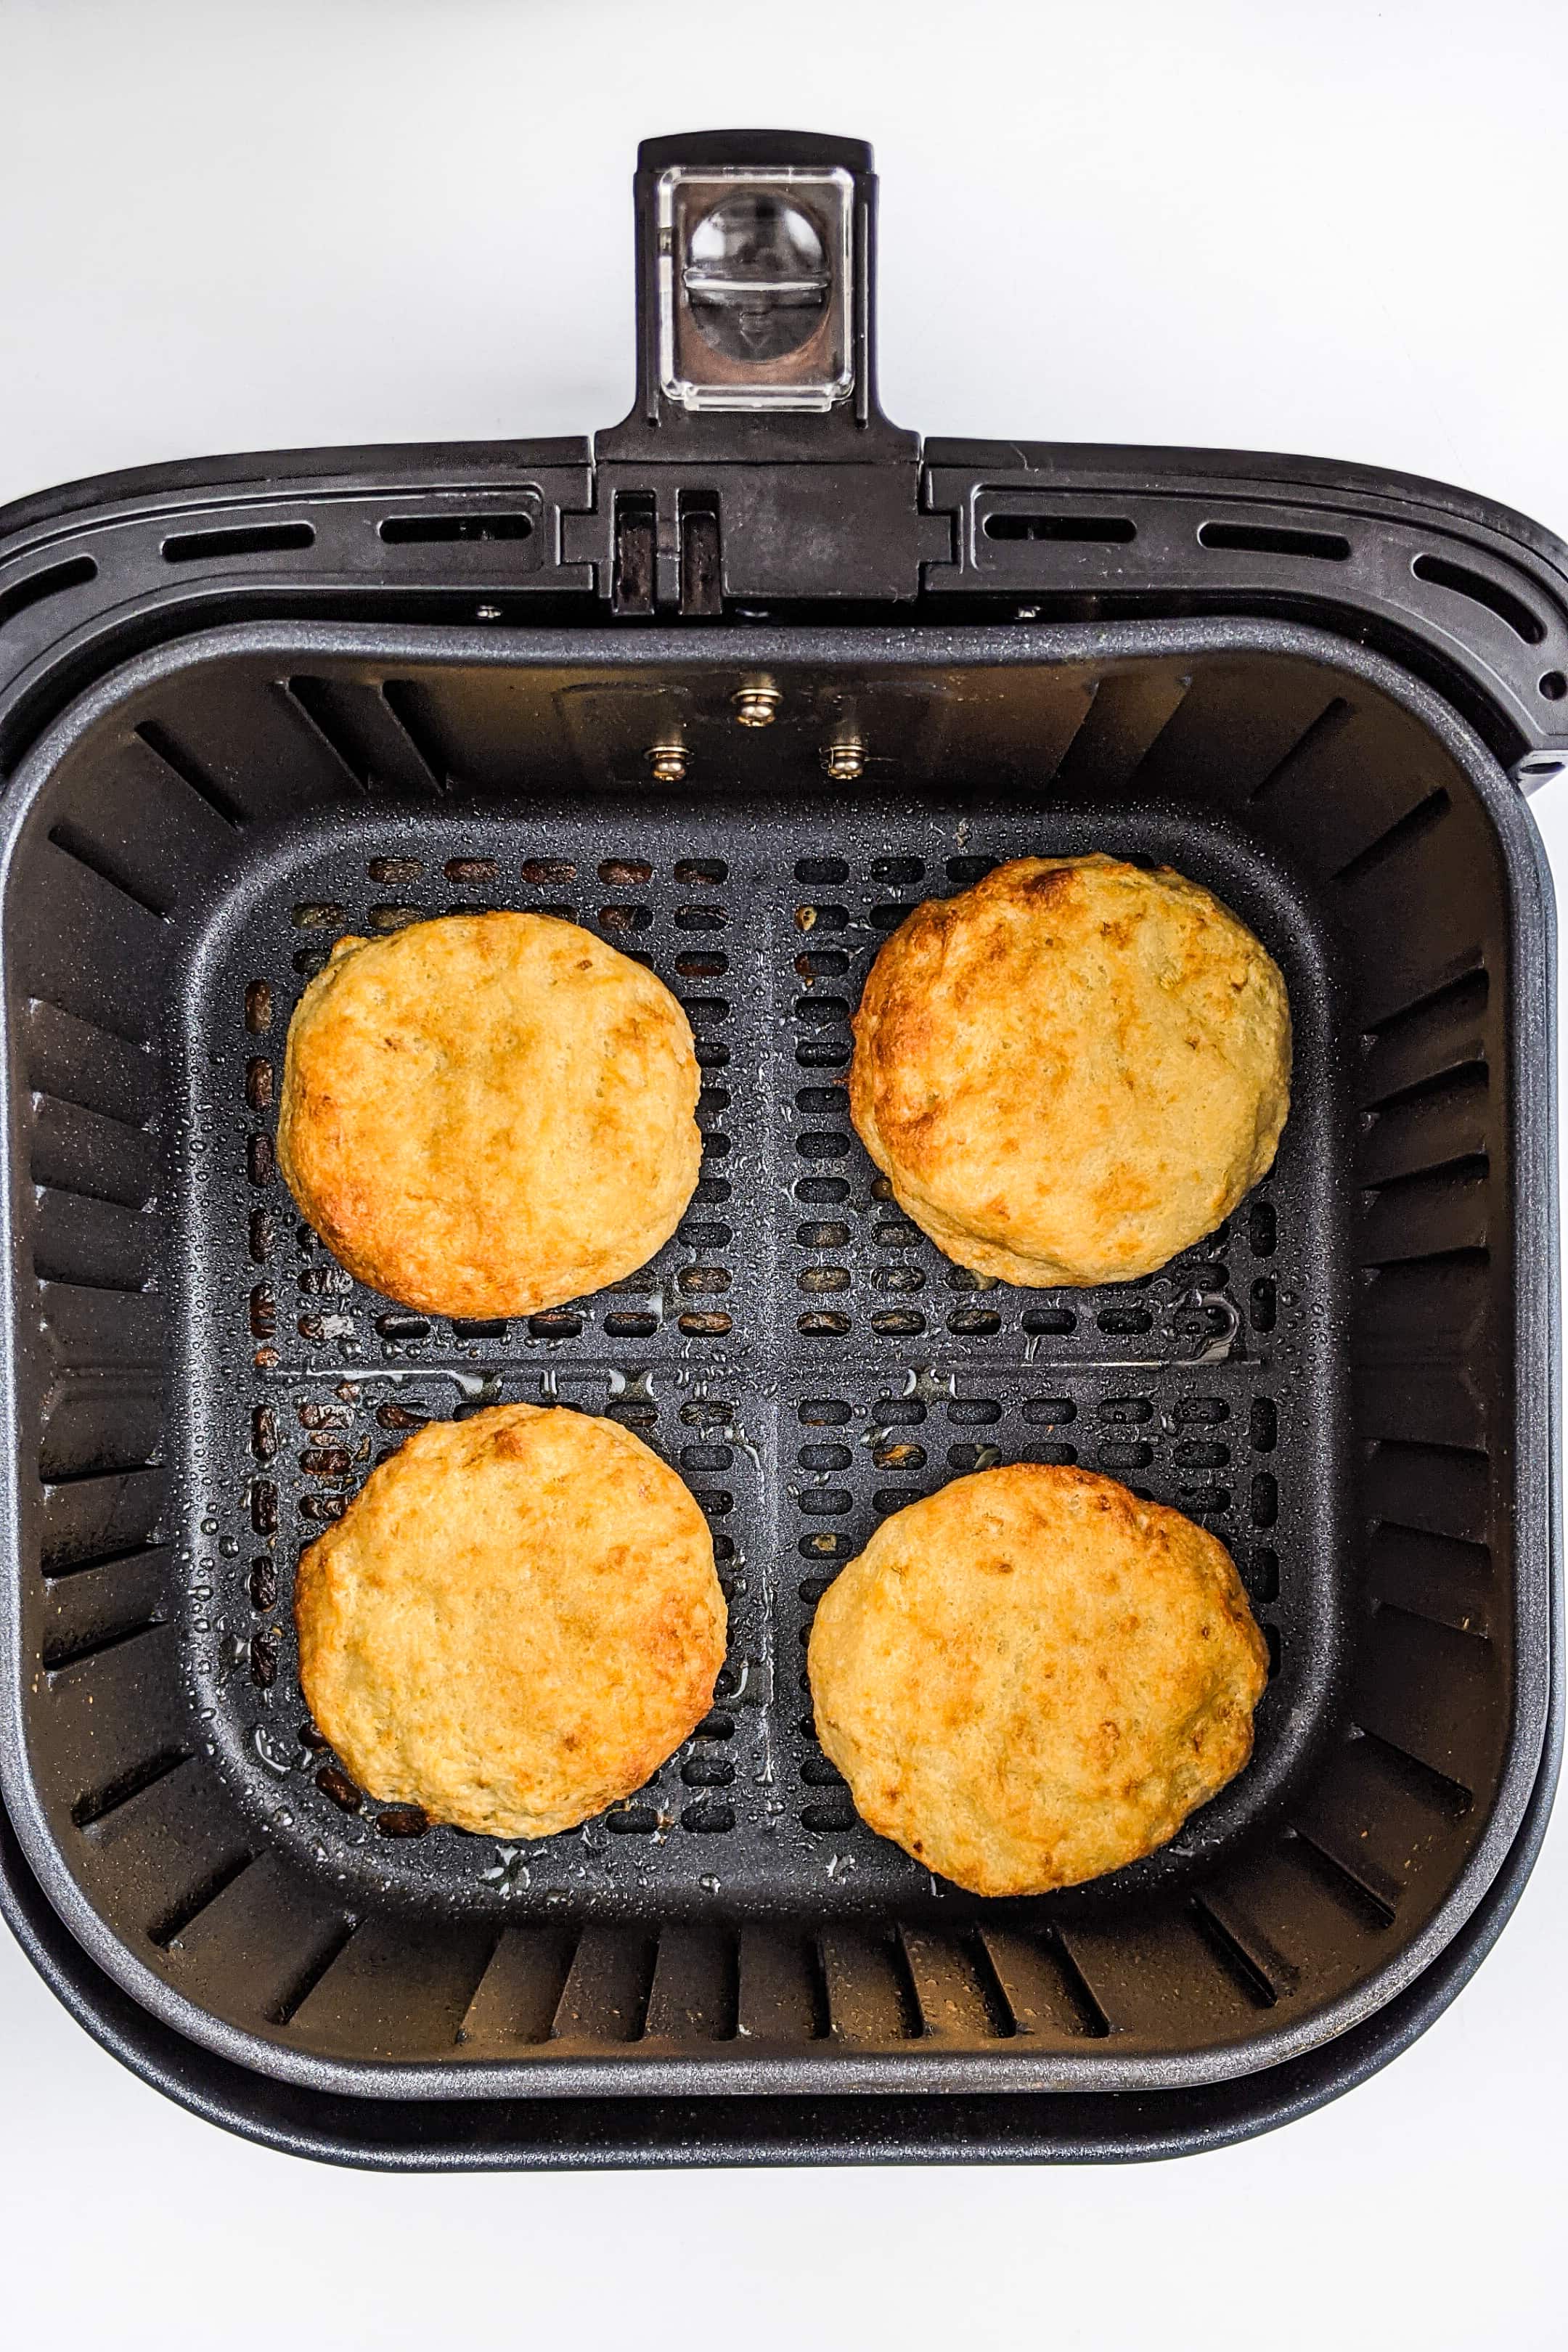 Top look of air fried hash brown patties in an air fryer basket.